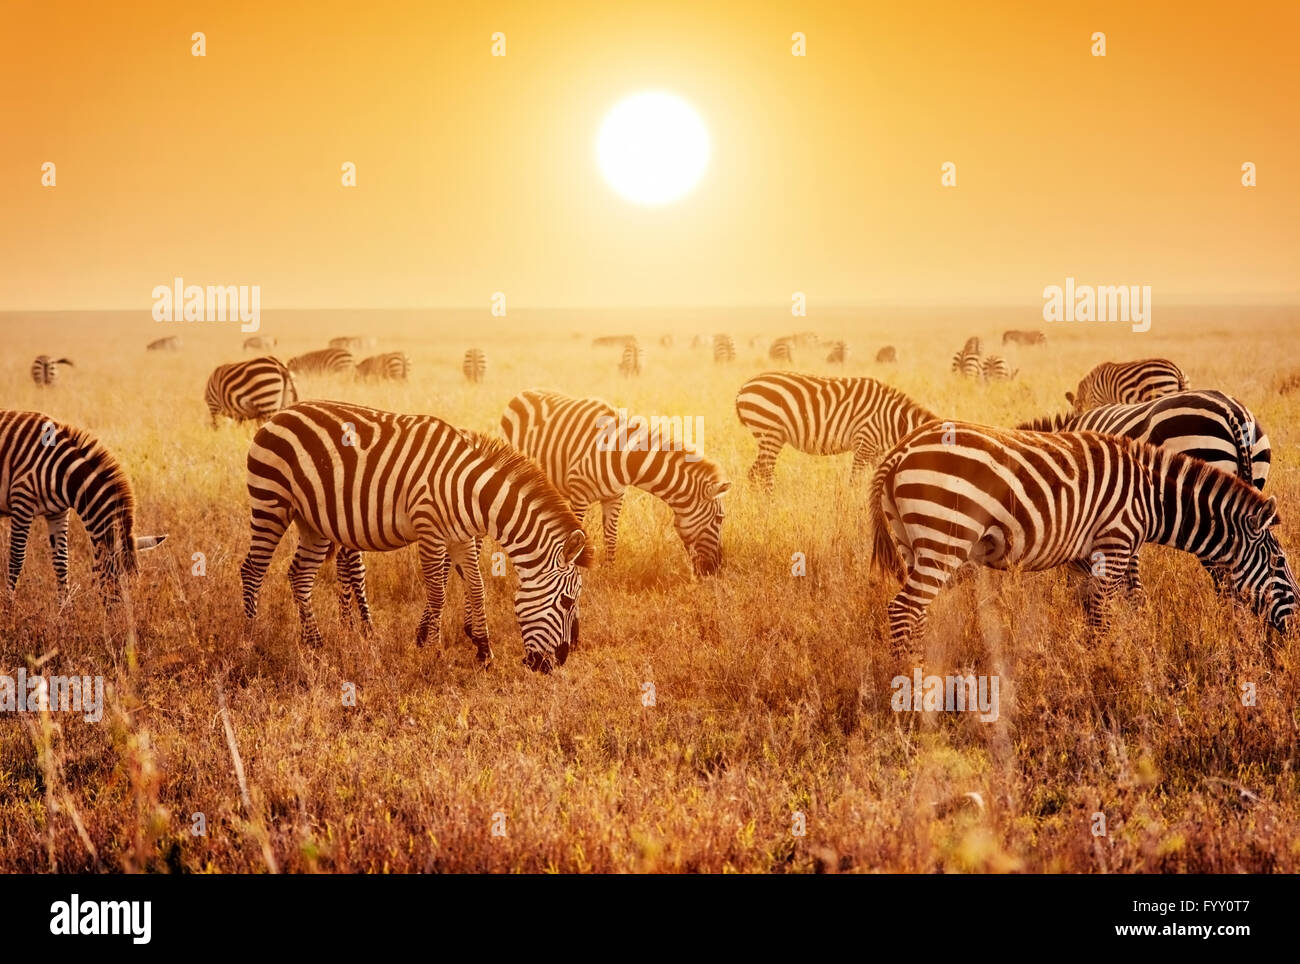 Zebras herd on savanna at sunset Stock Photo